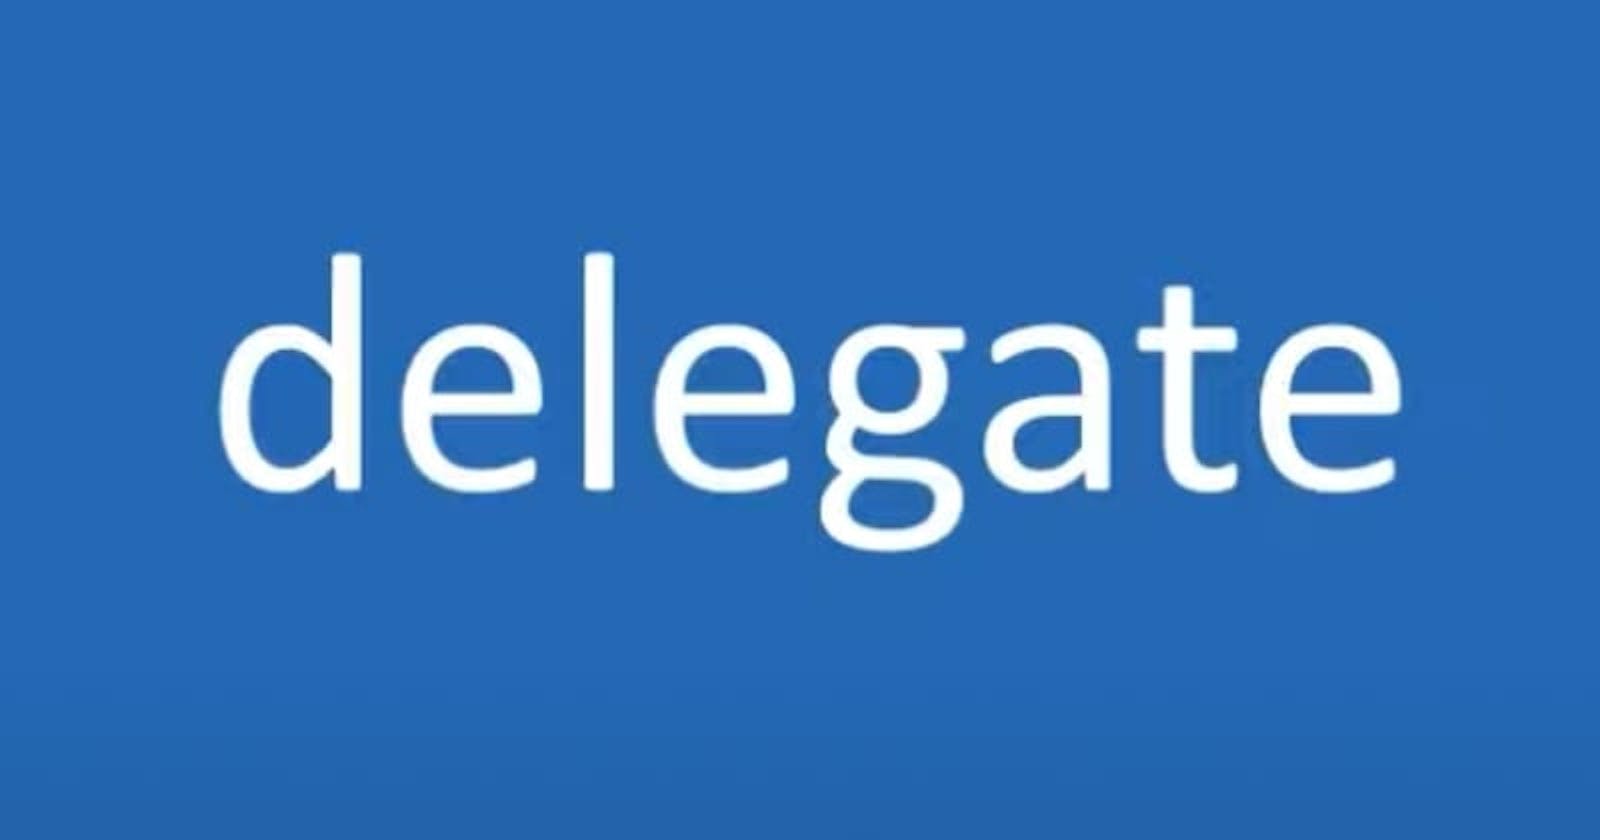 C# Delegates